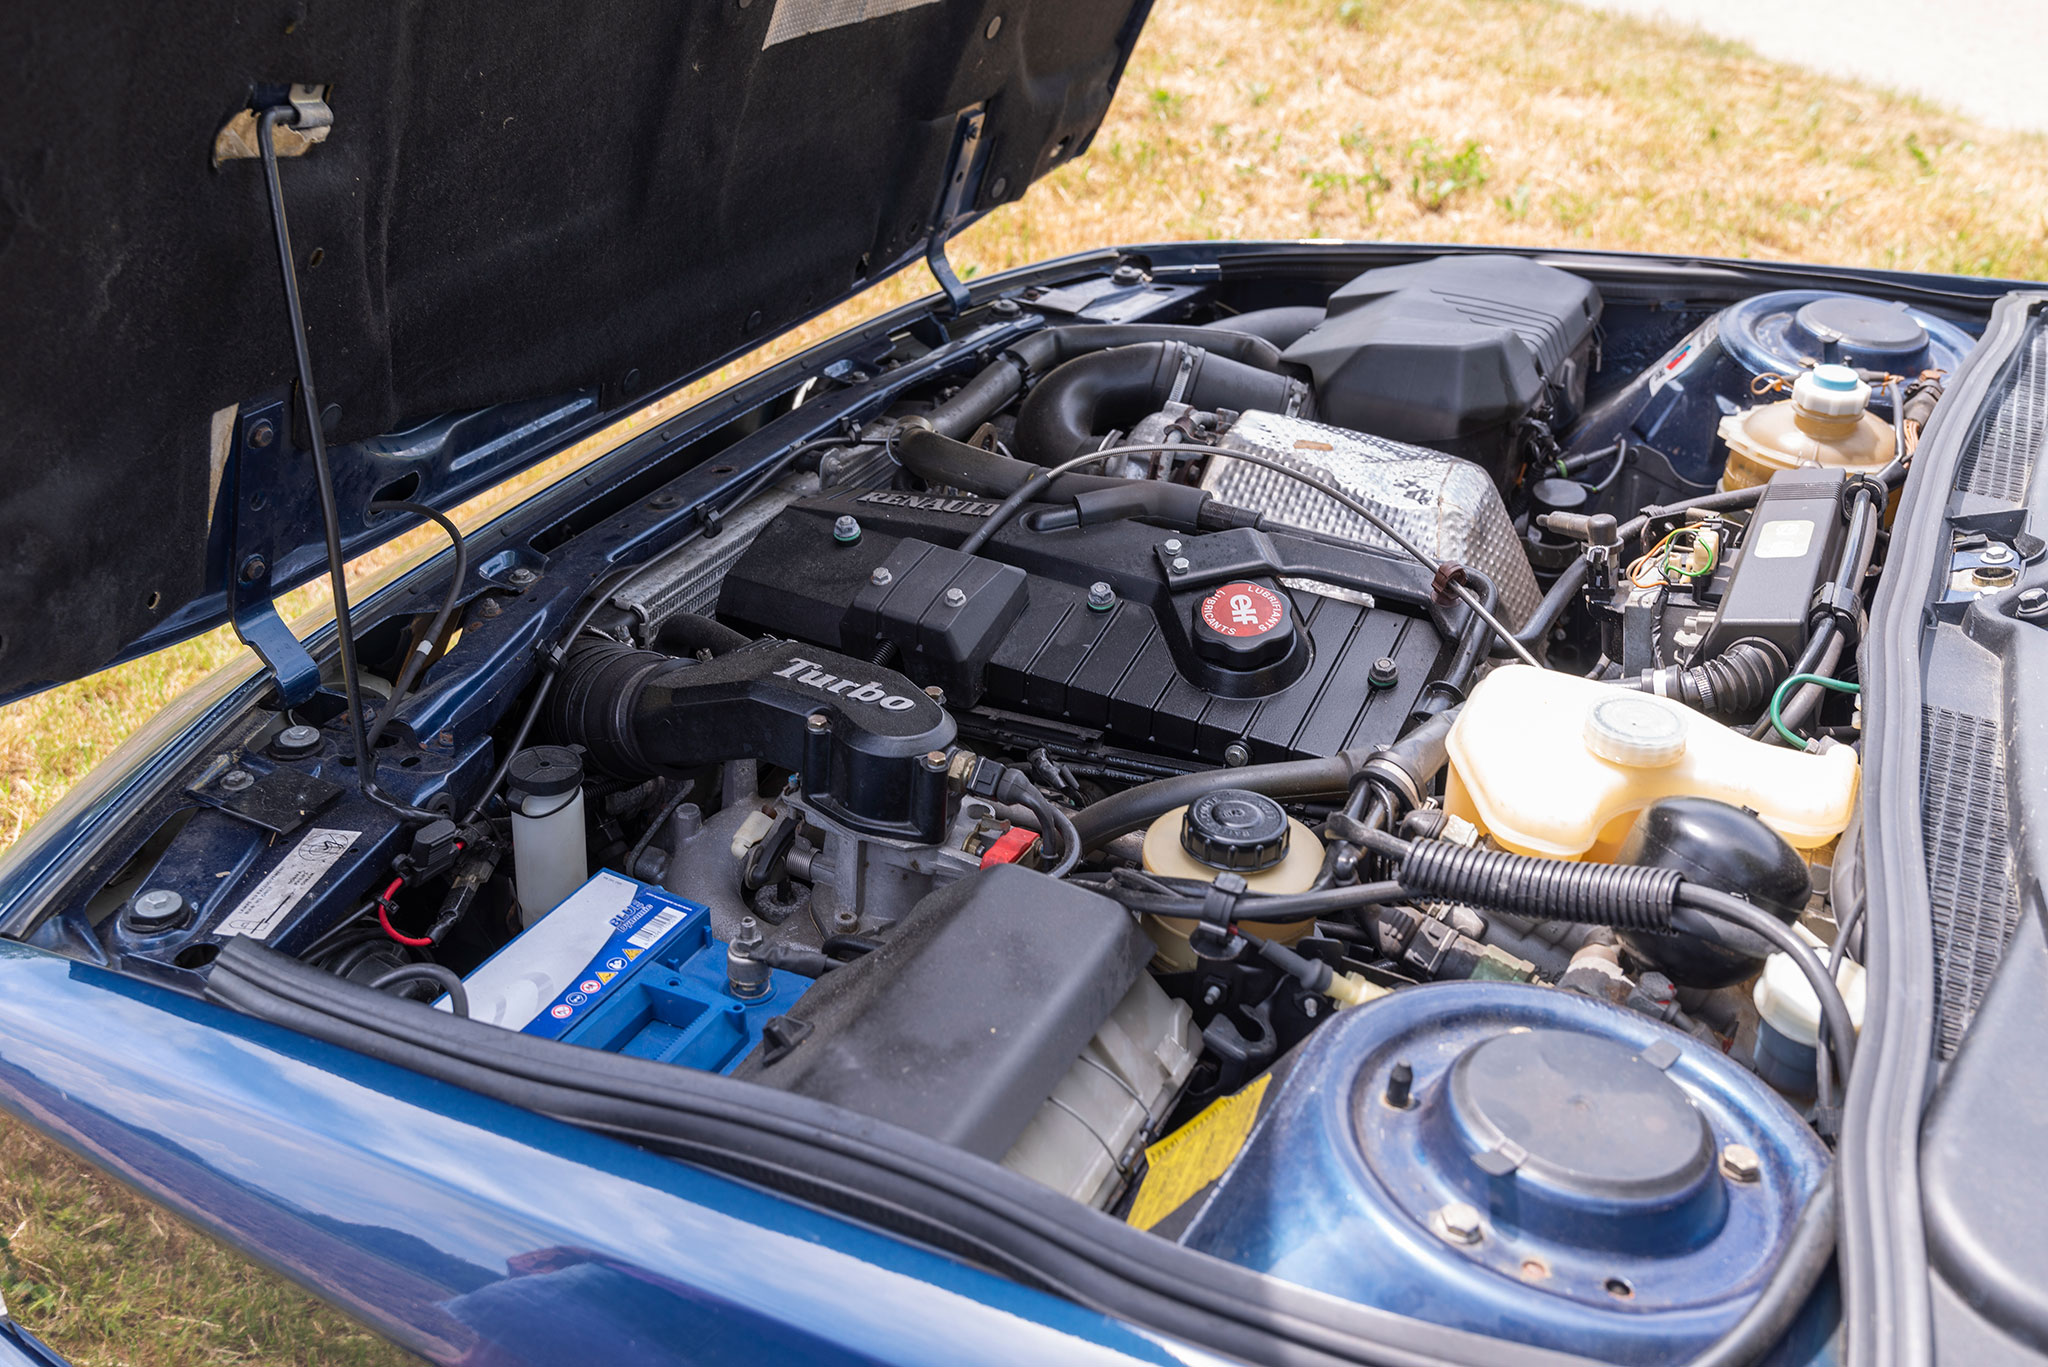 R21 Turbo – le moteur de 1995 cm³ agrémenté d’un turbo Garret qui fait passer la puissance à 175 chevaux.